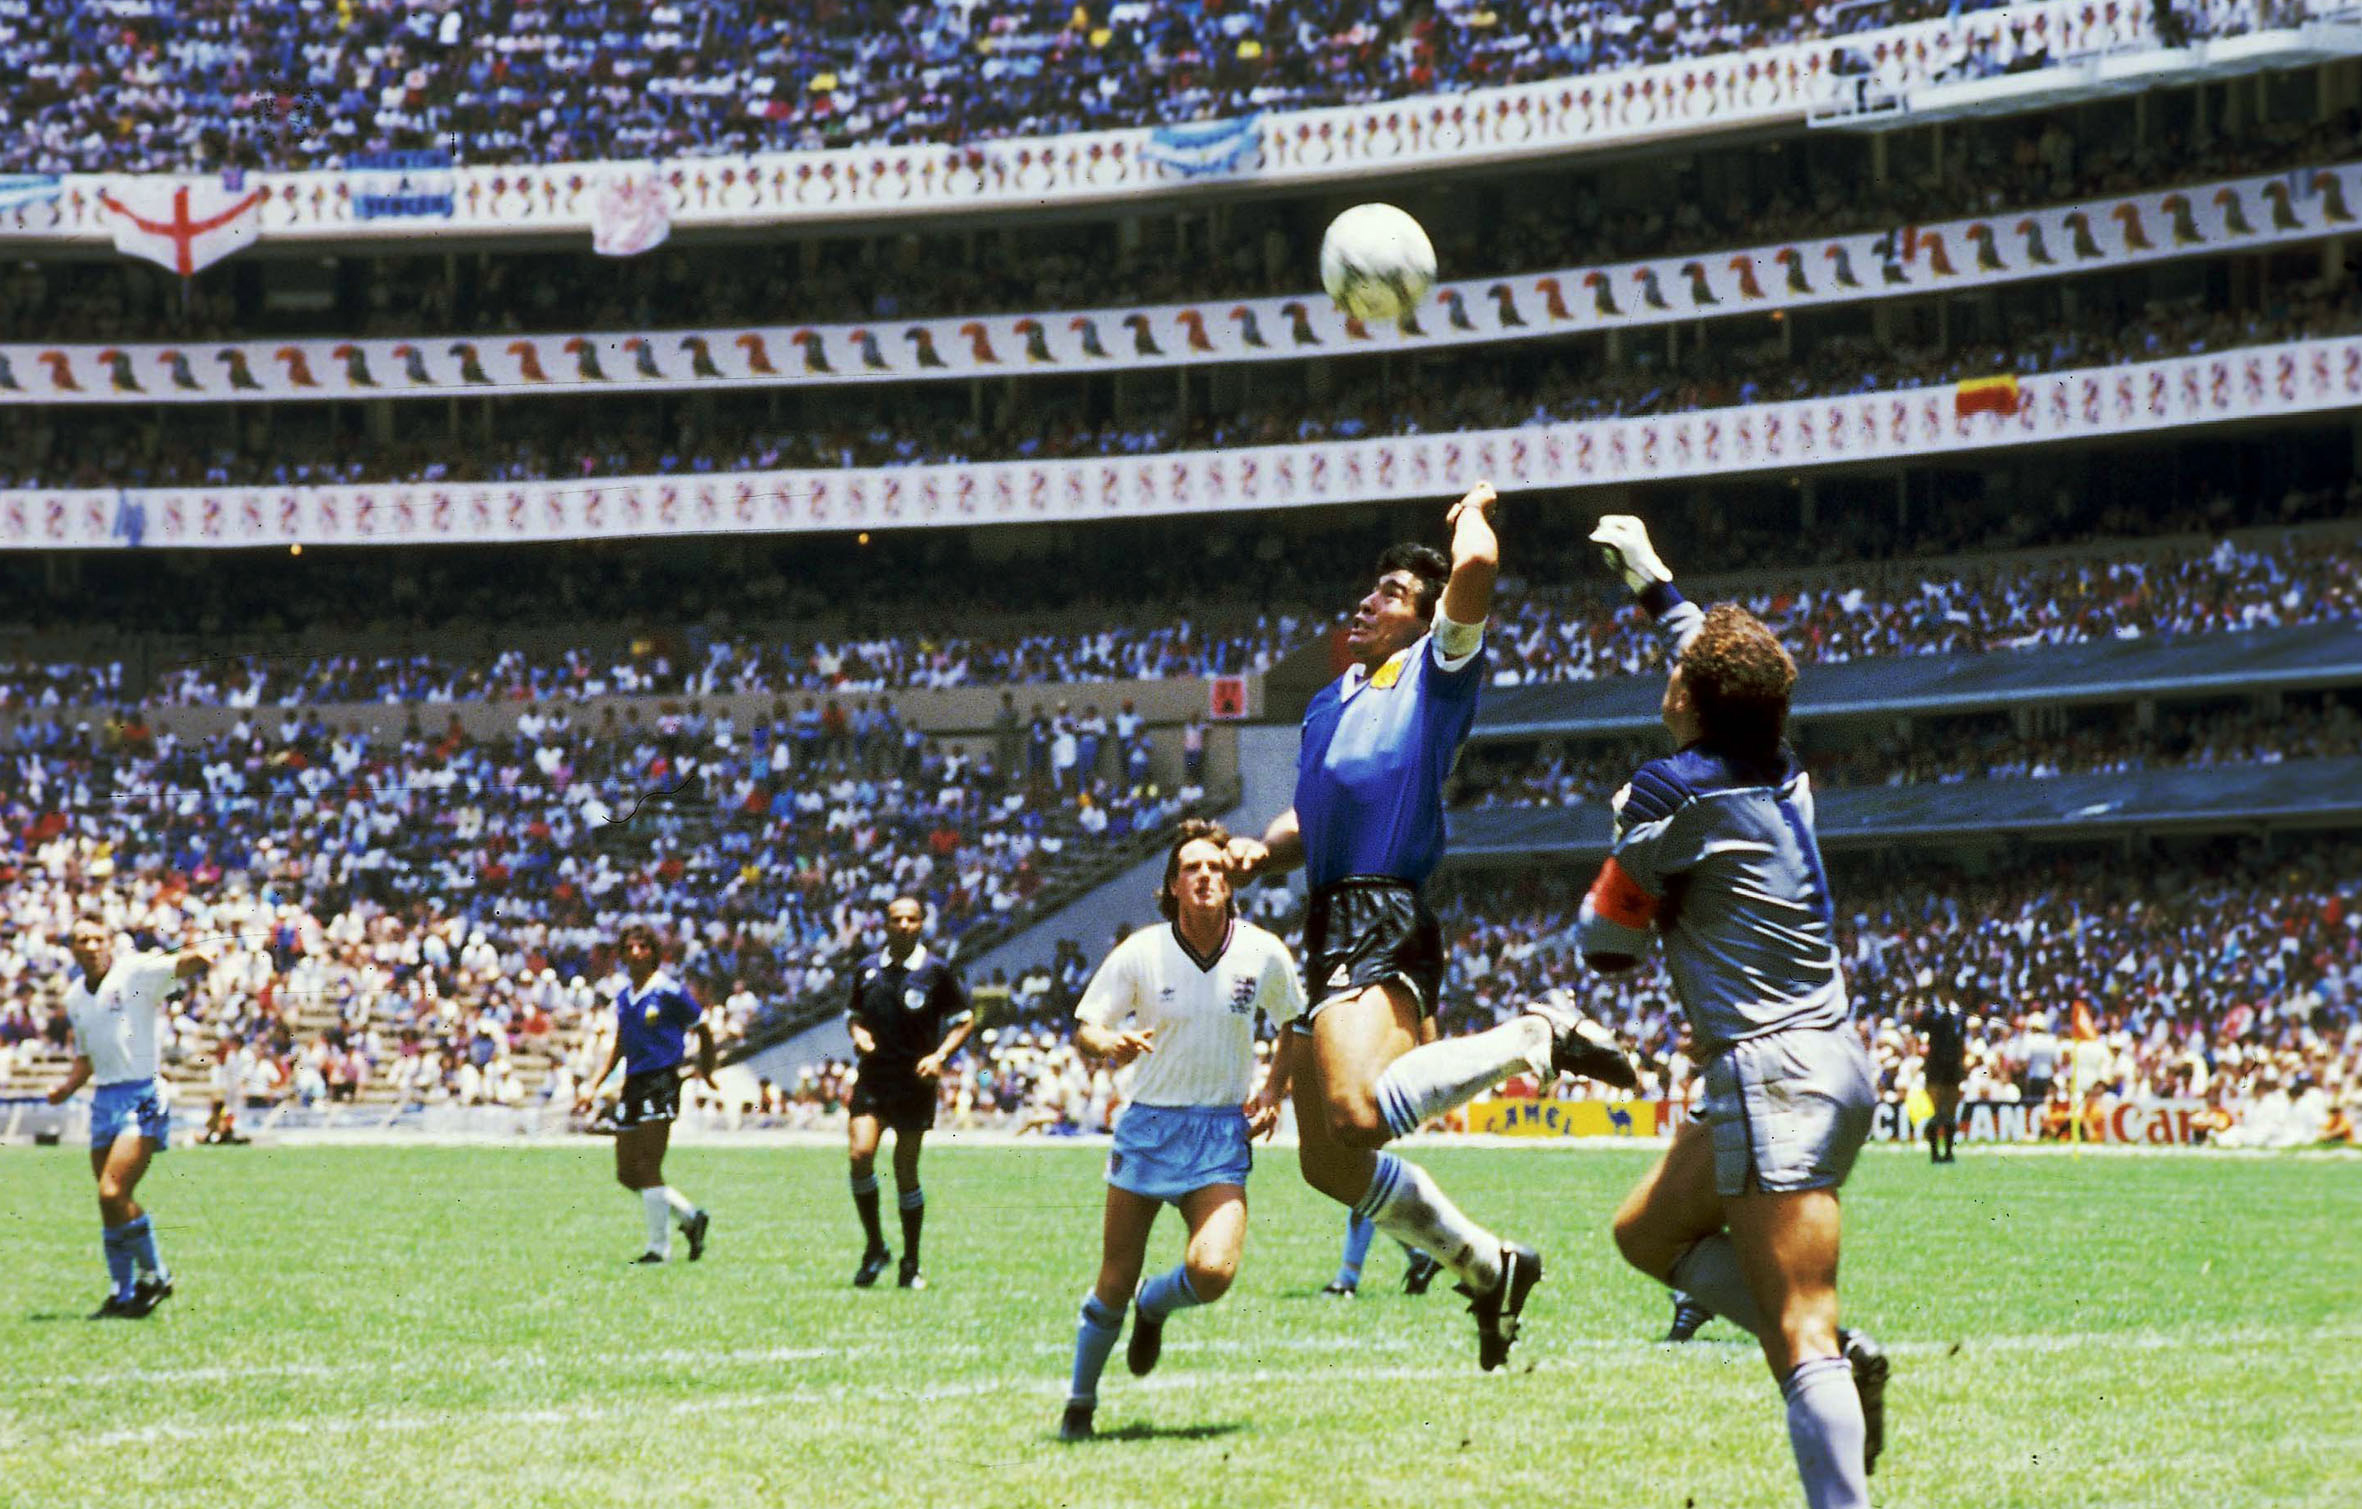 Zwei Legenden, ein Gedanke - den Ball mit der Hand spielen. Maradona setzte sich im Duell mit Peter Shilton regelwidrig durch und erzielte mit der "Hand Gottes" das 2:0 für Argentinien.